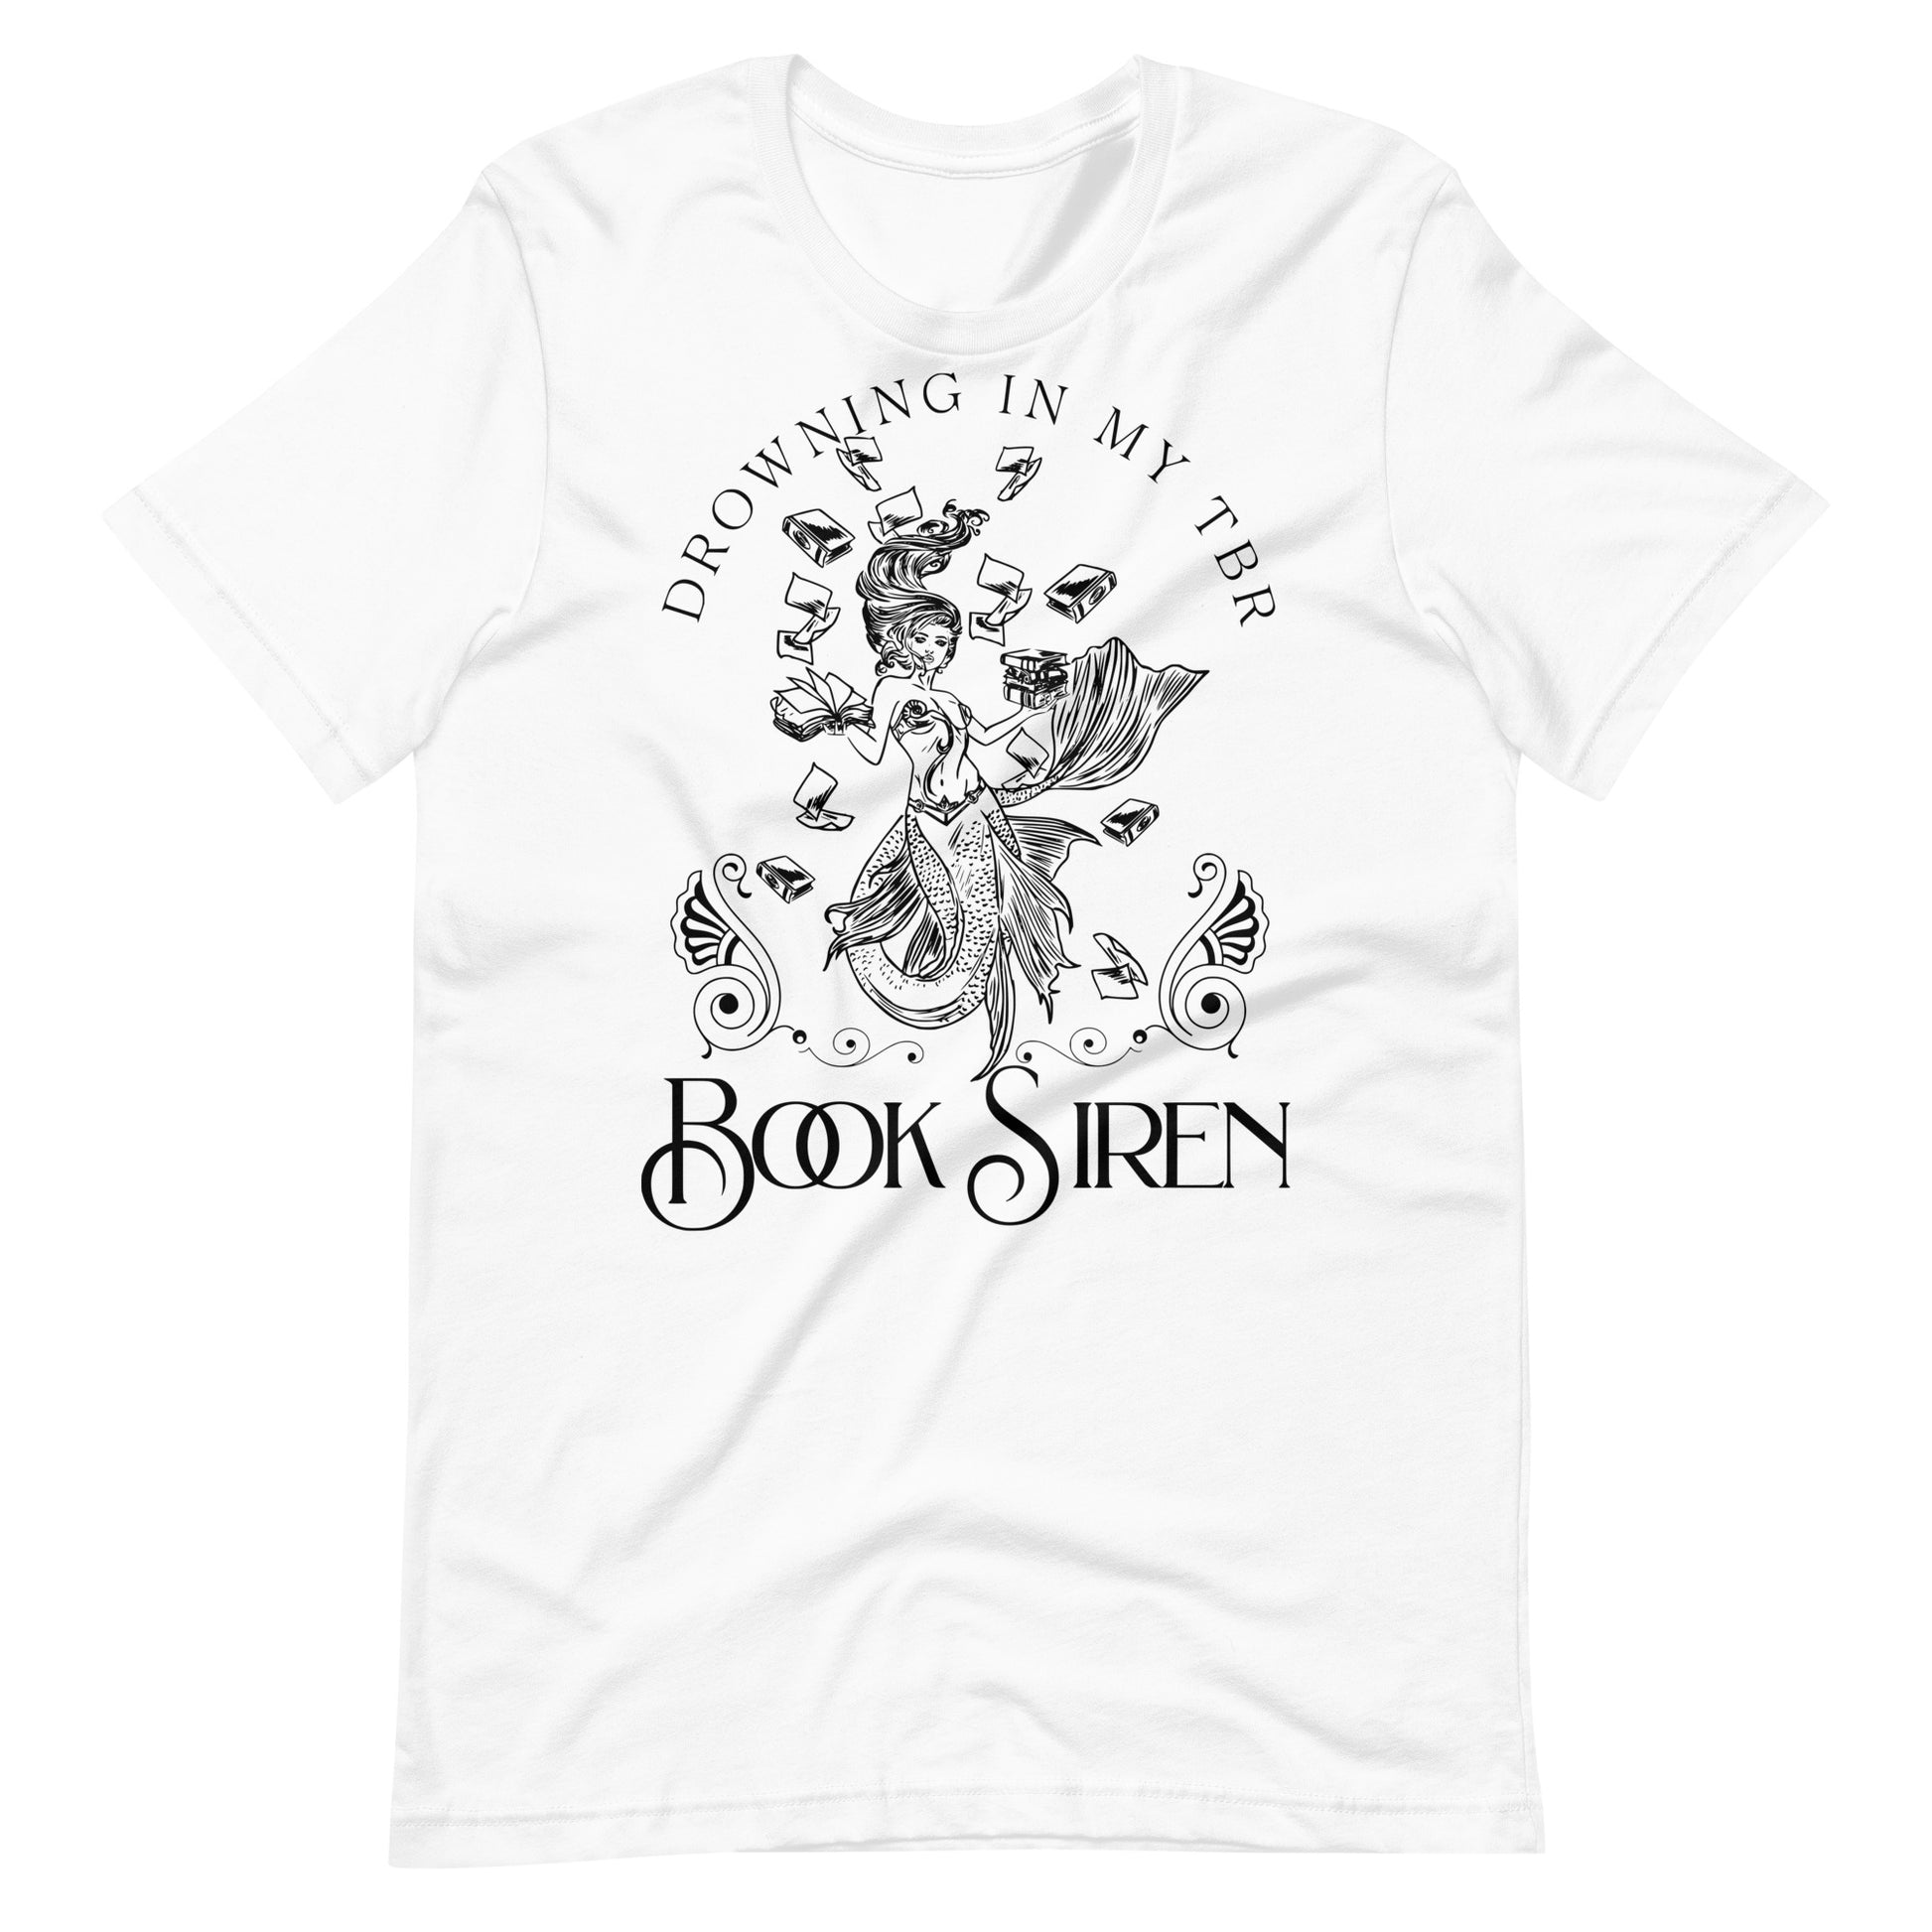 Book Siren Unisex t-shirt™ for FireDrake Artistry